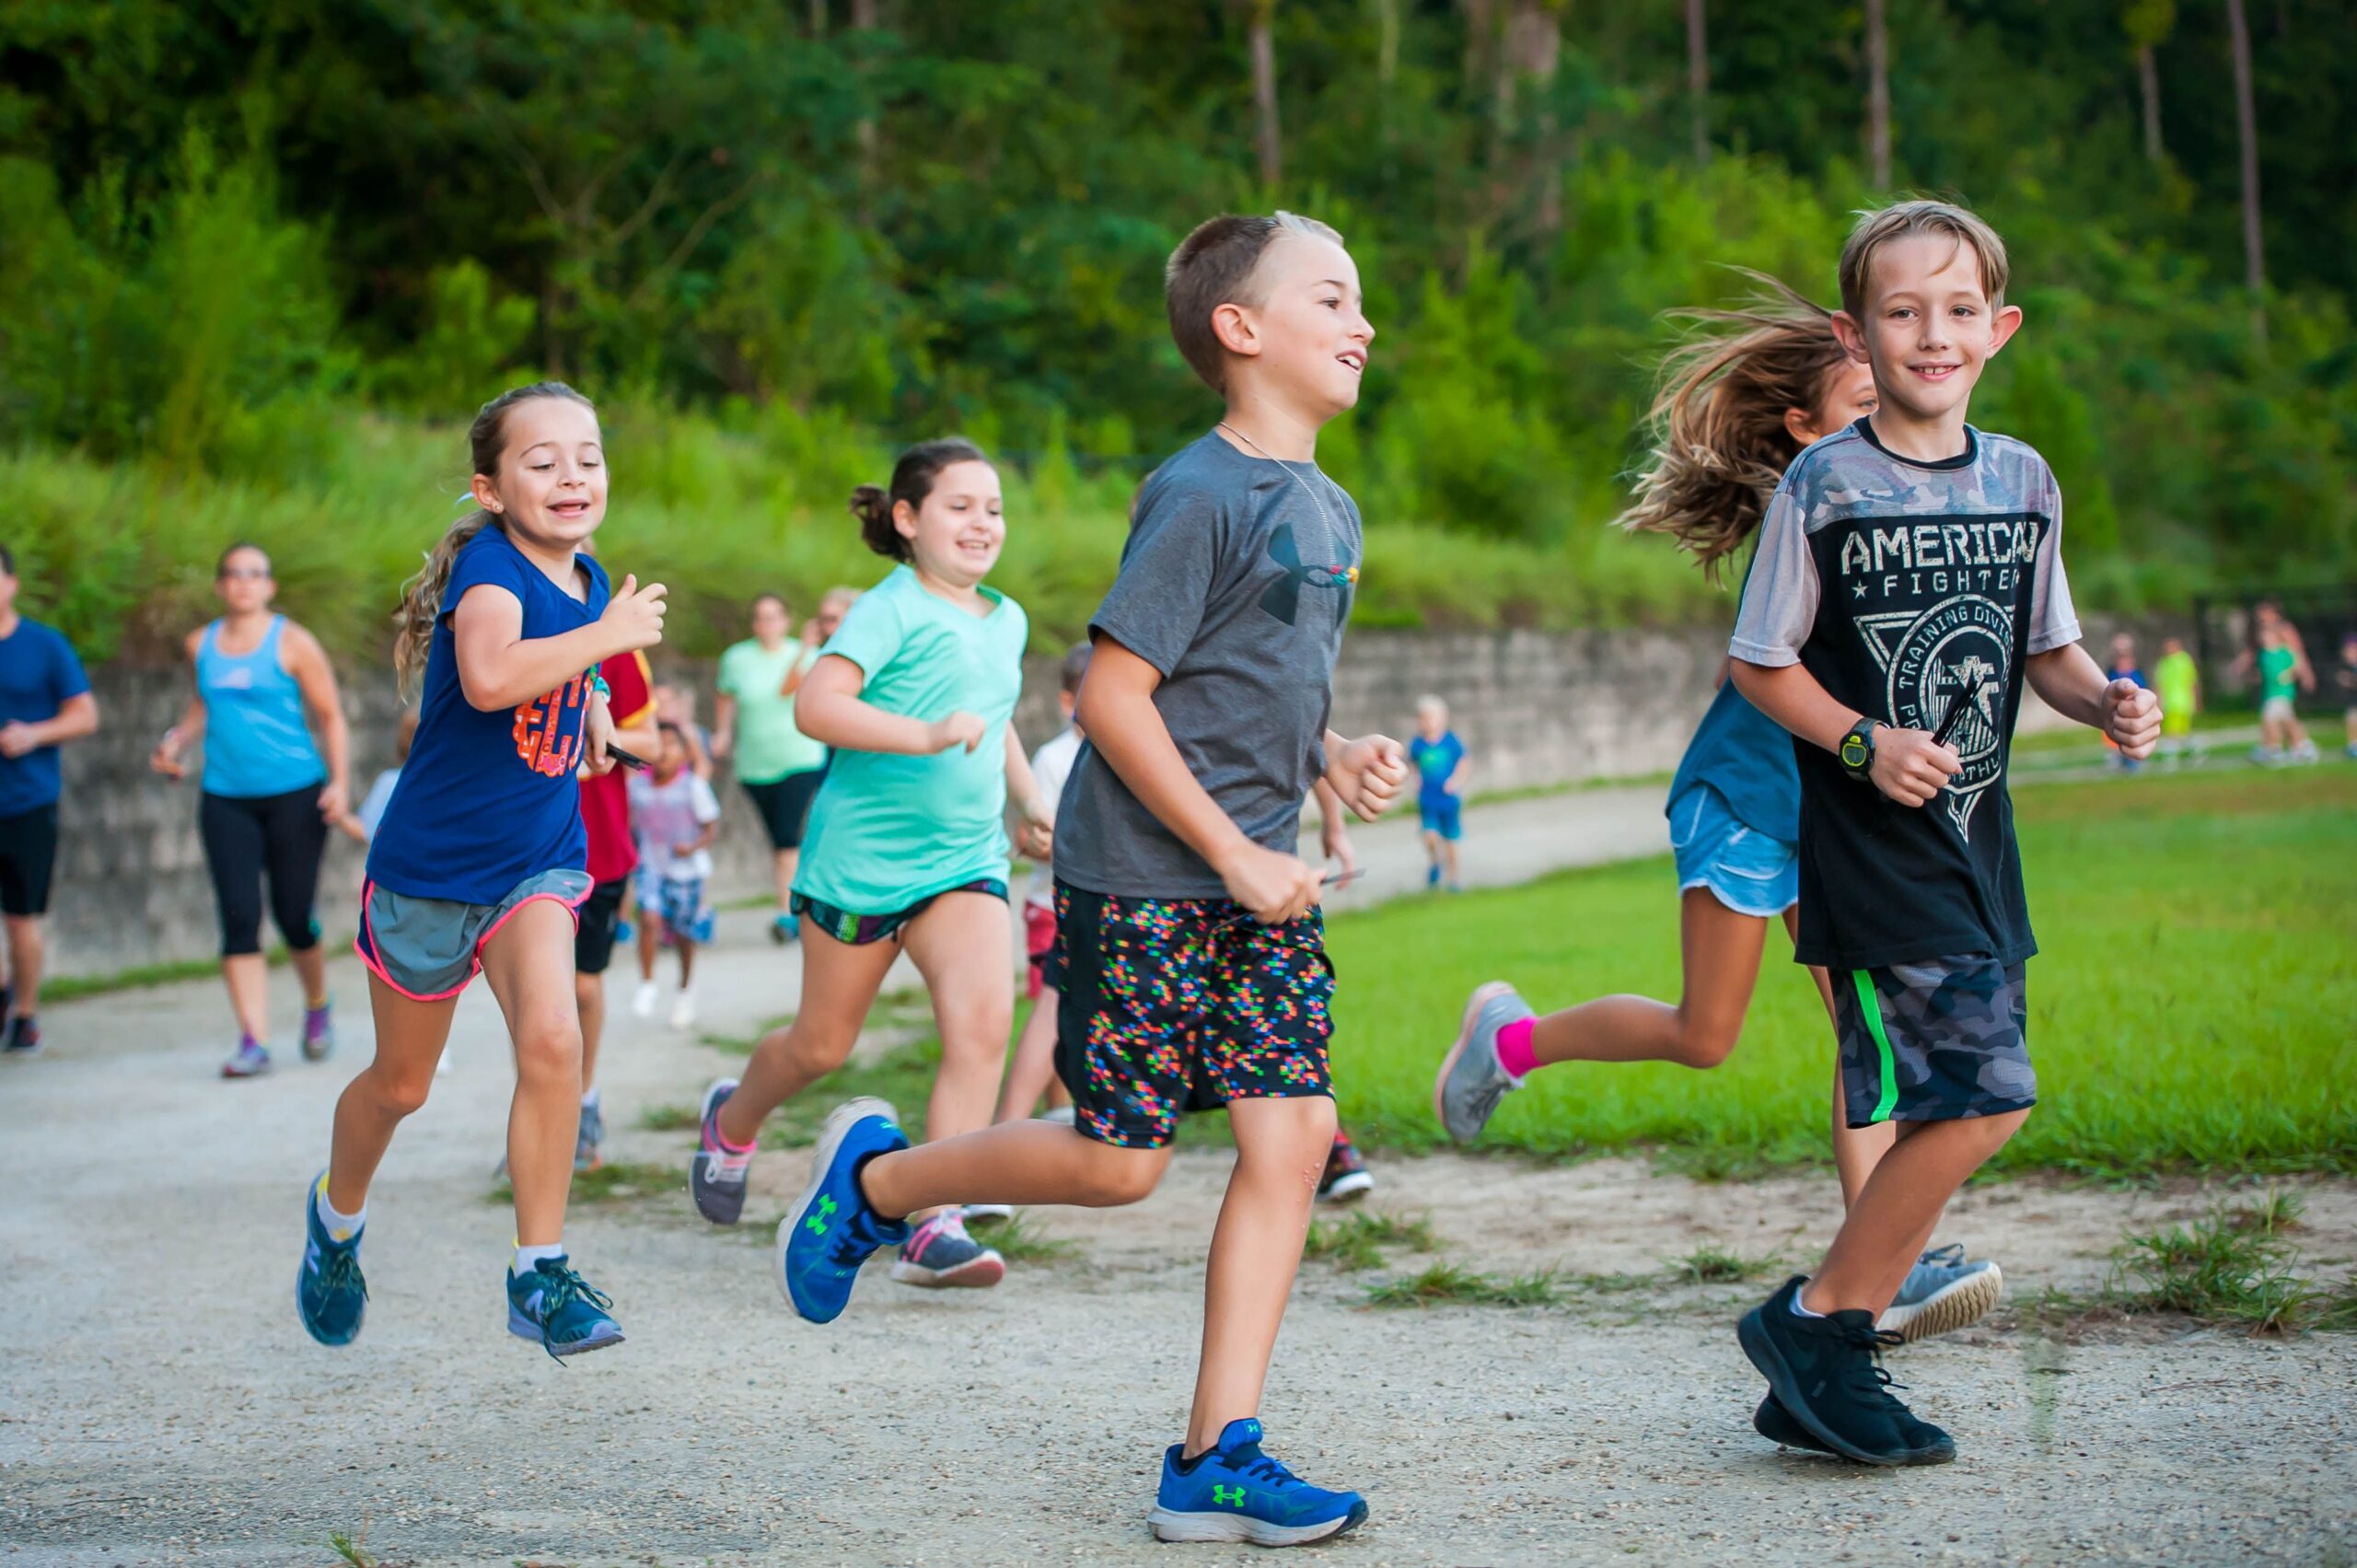 Sportgruppen für Kinder: Zusammen macht's mehr Spaß